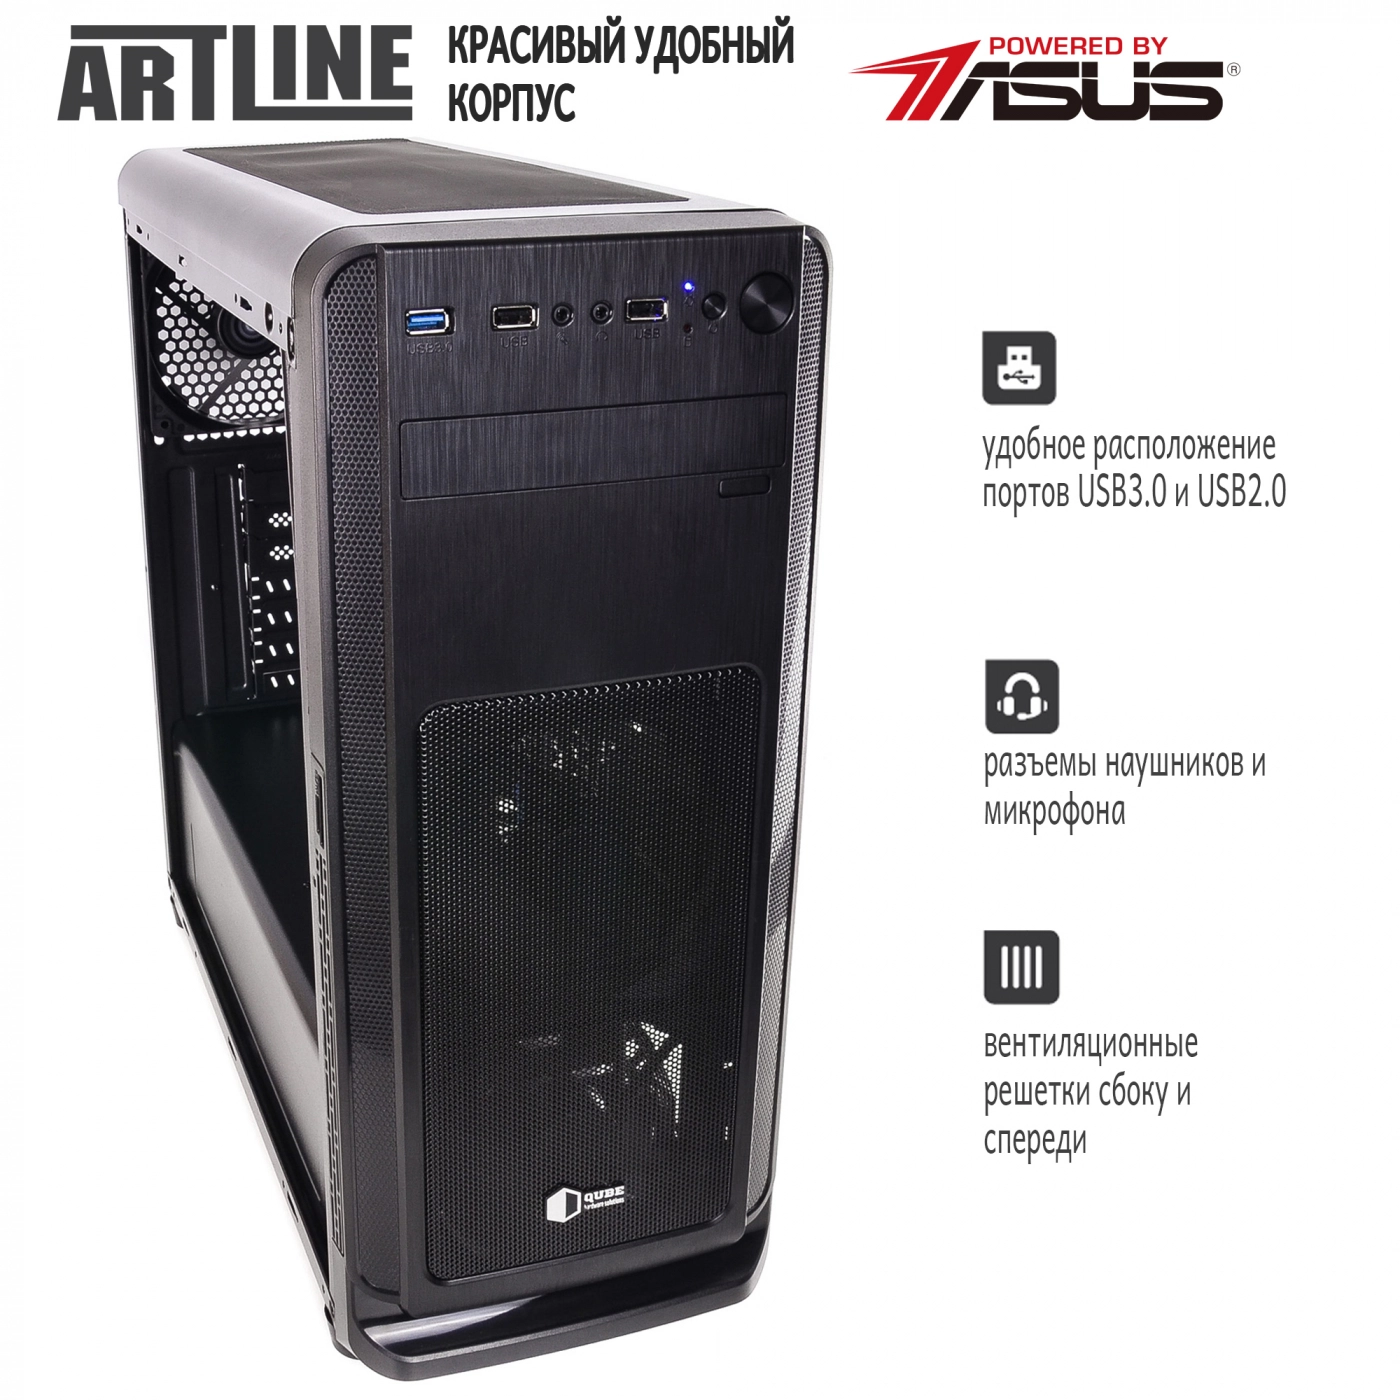 Купить Сервер ARTLINE Business T81v03 - фото 5